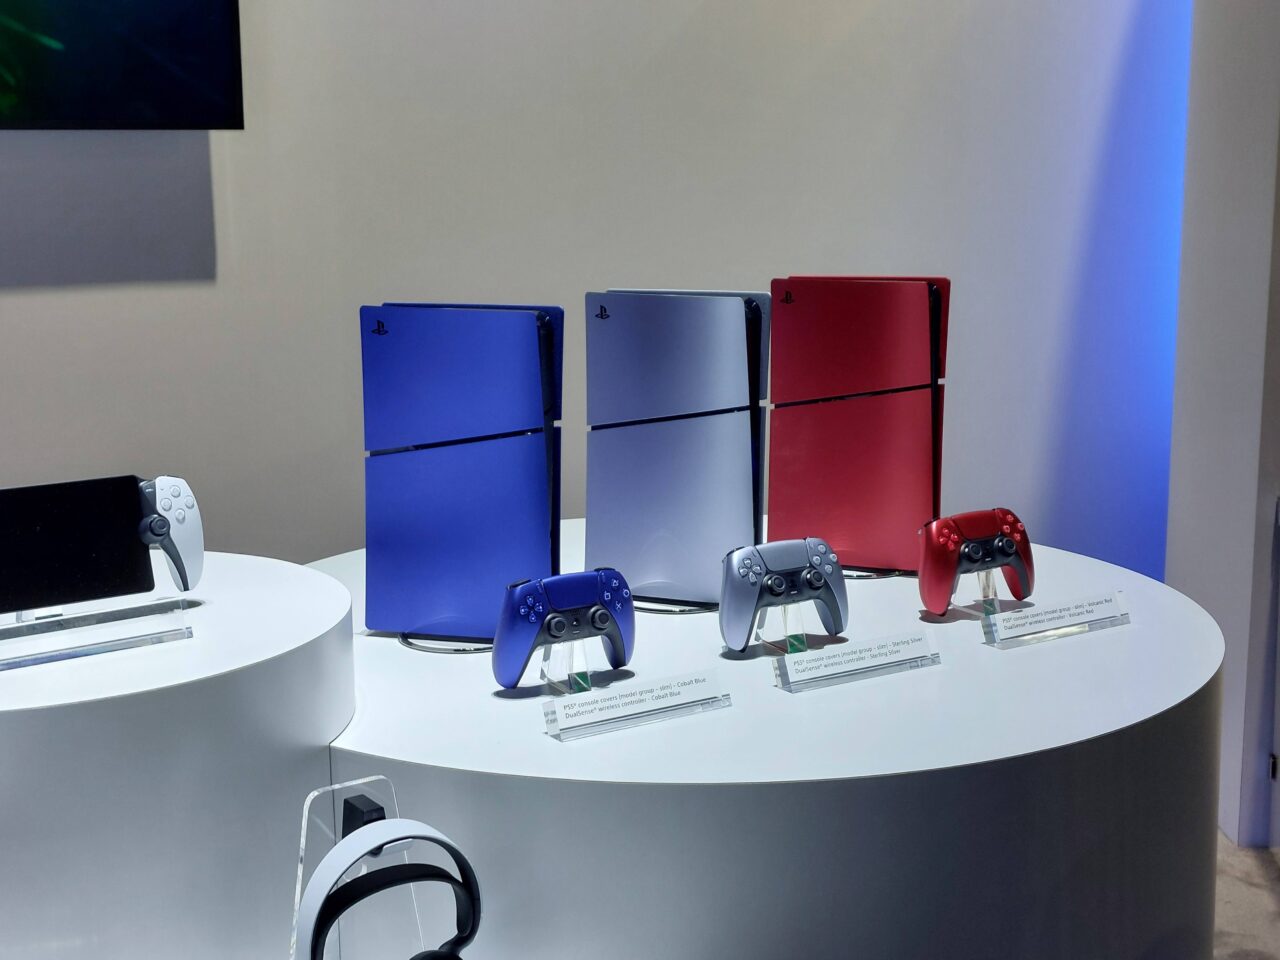 Konsola do gier wideo PlayStation 5 / PS5 w trzech wersjach kolorystycznych: czarnej, niebieskiej i czerwonej, z dopasowanymi kontrolerami, wystawione na białym okrągłym podeście.